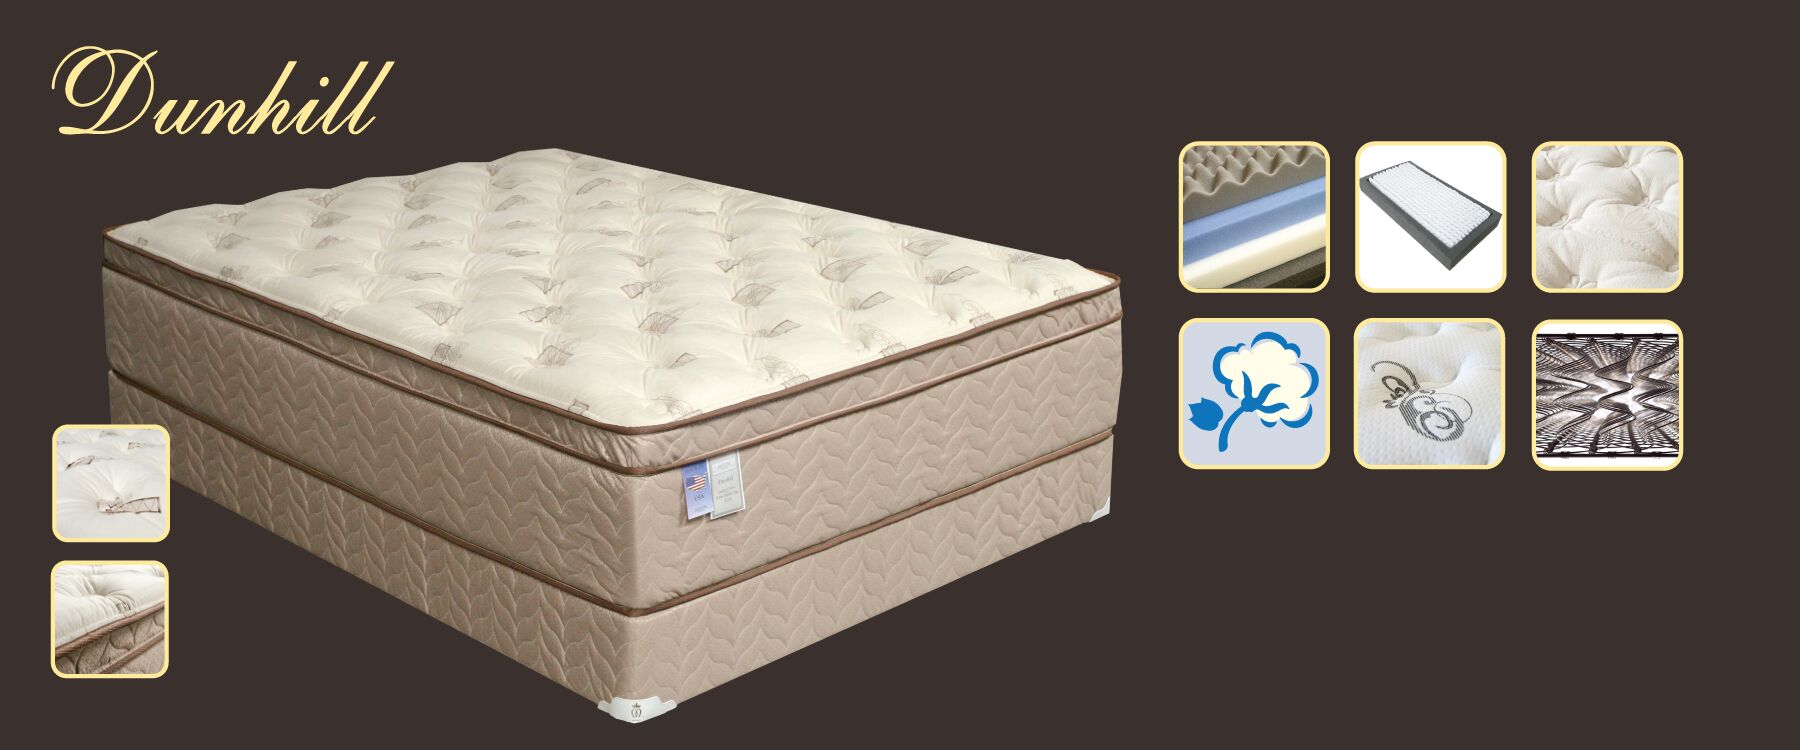 maxim mattress full size